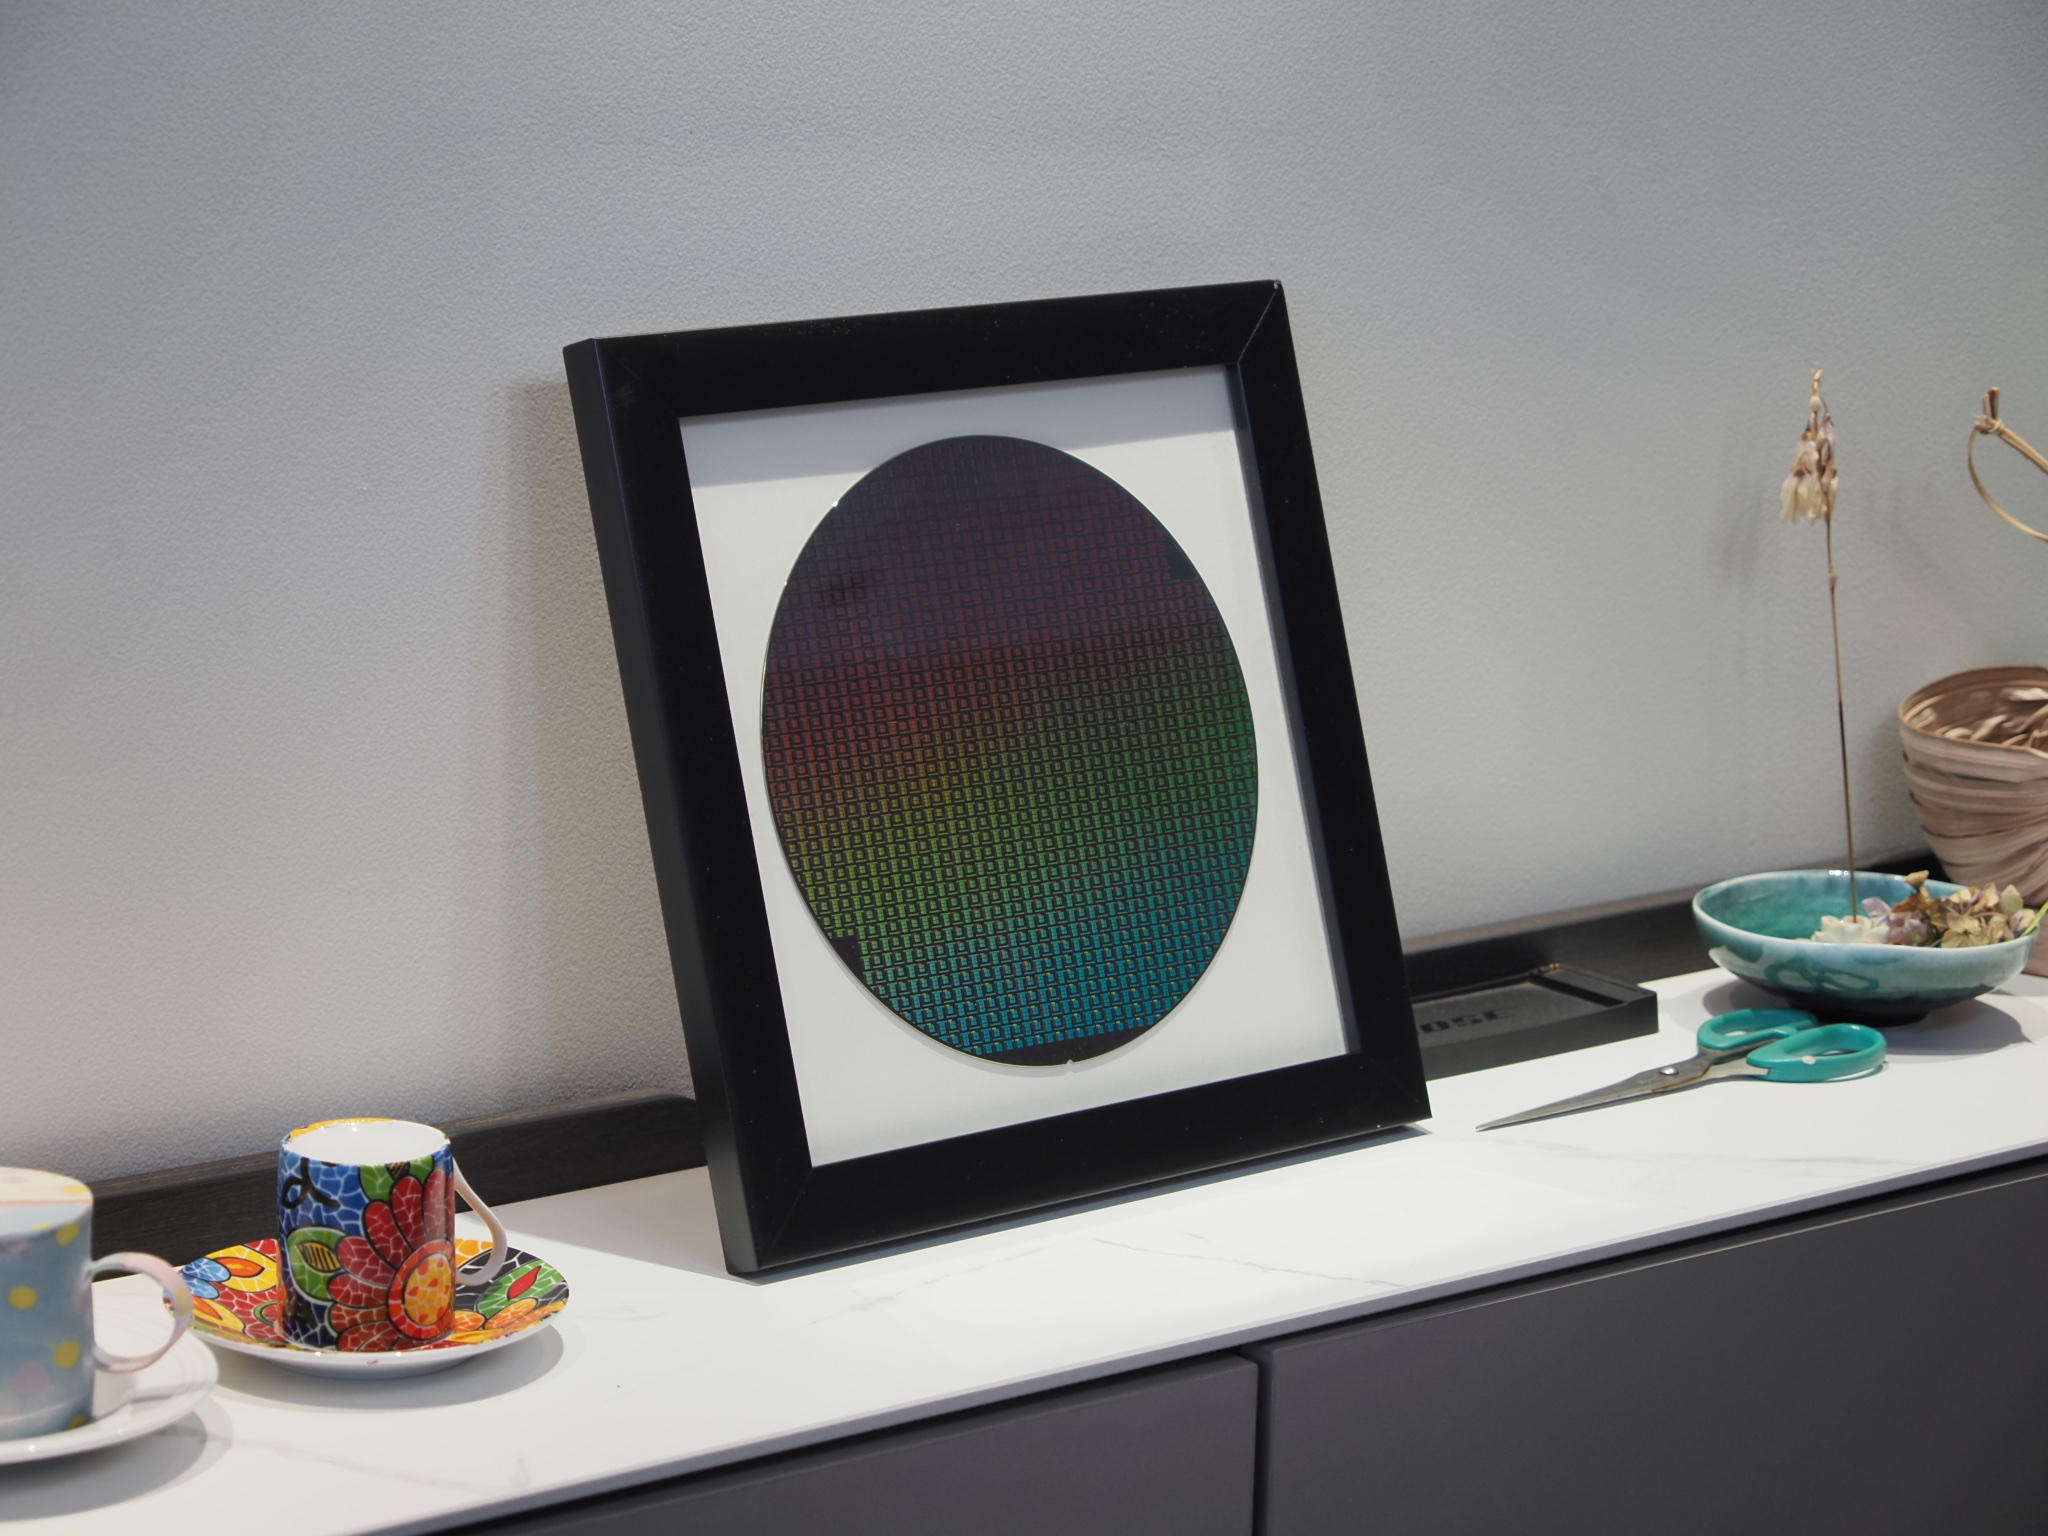 中芯国际 晶圆wafer硅片半导体光刻片晶圆摆件科技展示装裱